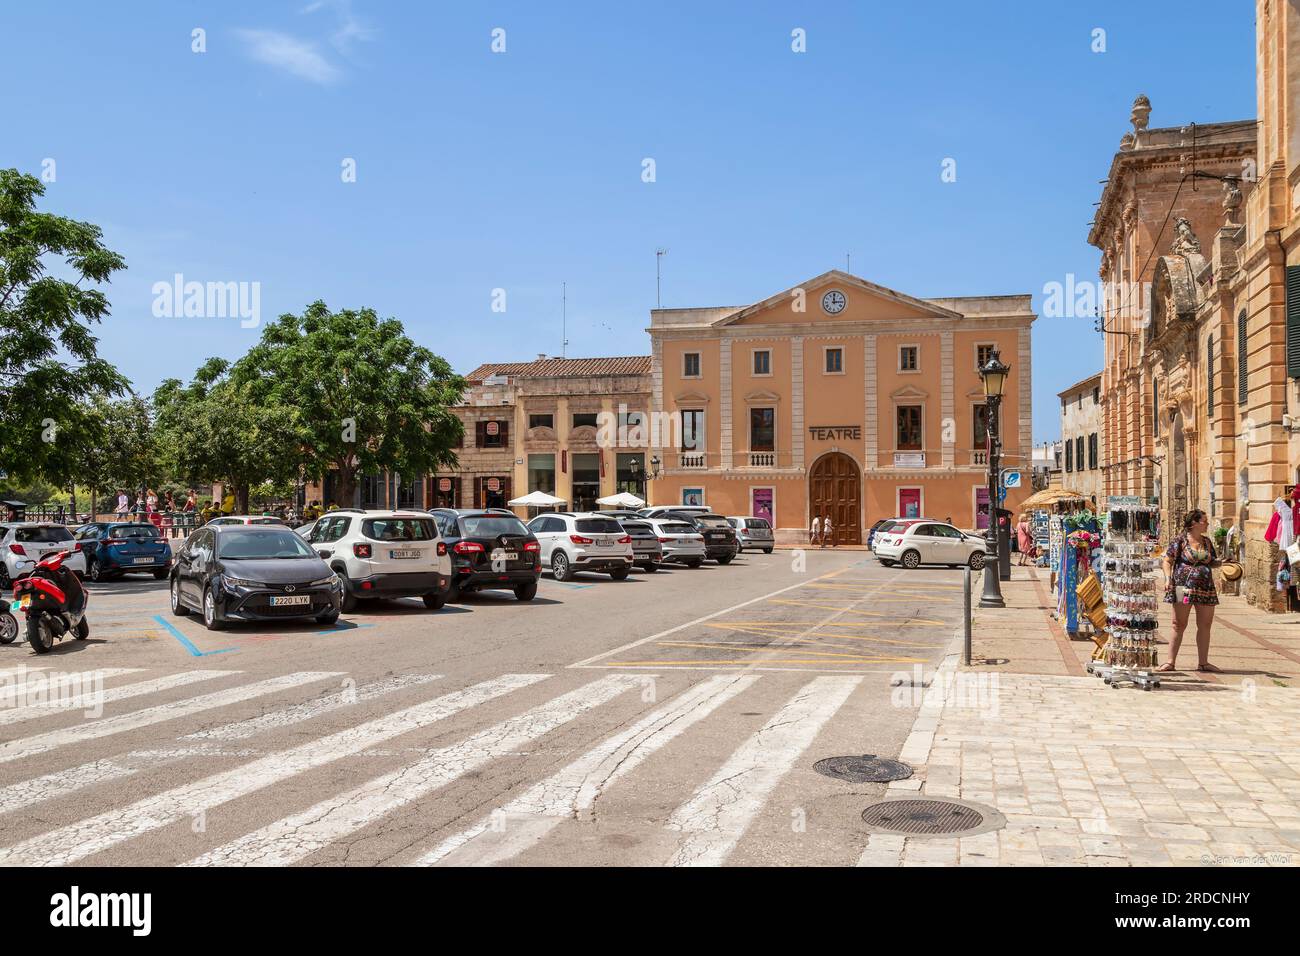 Bâtiment de théâtre sur la Plaça des Born dans le centre de la ville historique de Ciutadella sur l'île espagnole de Minorque. Banque D'Images